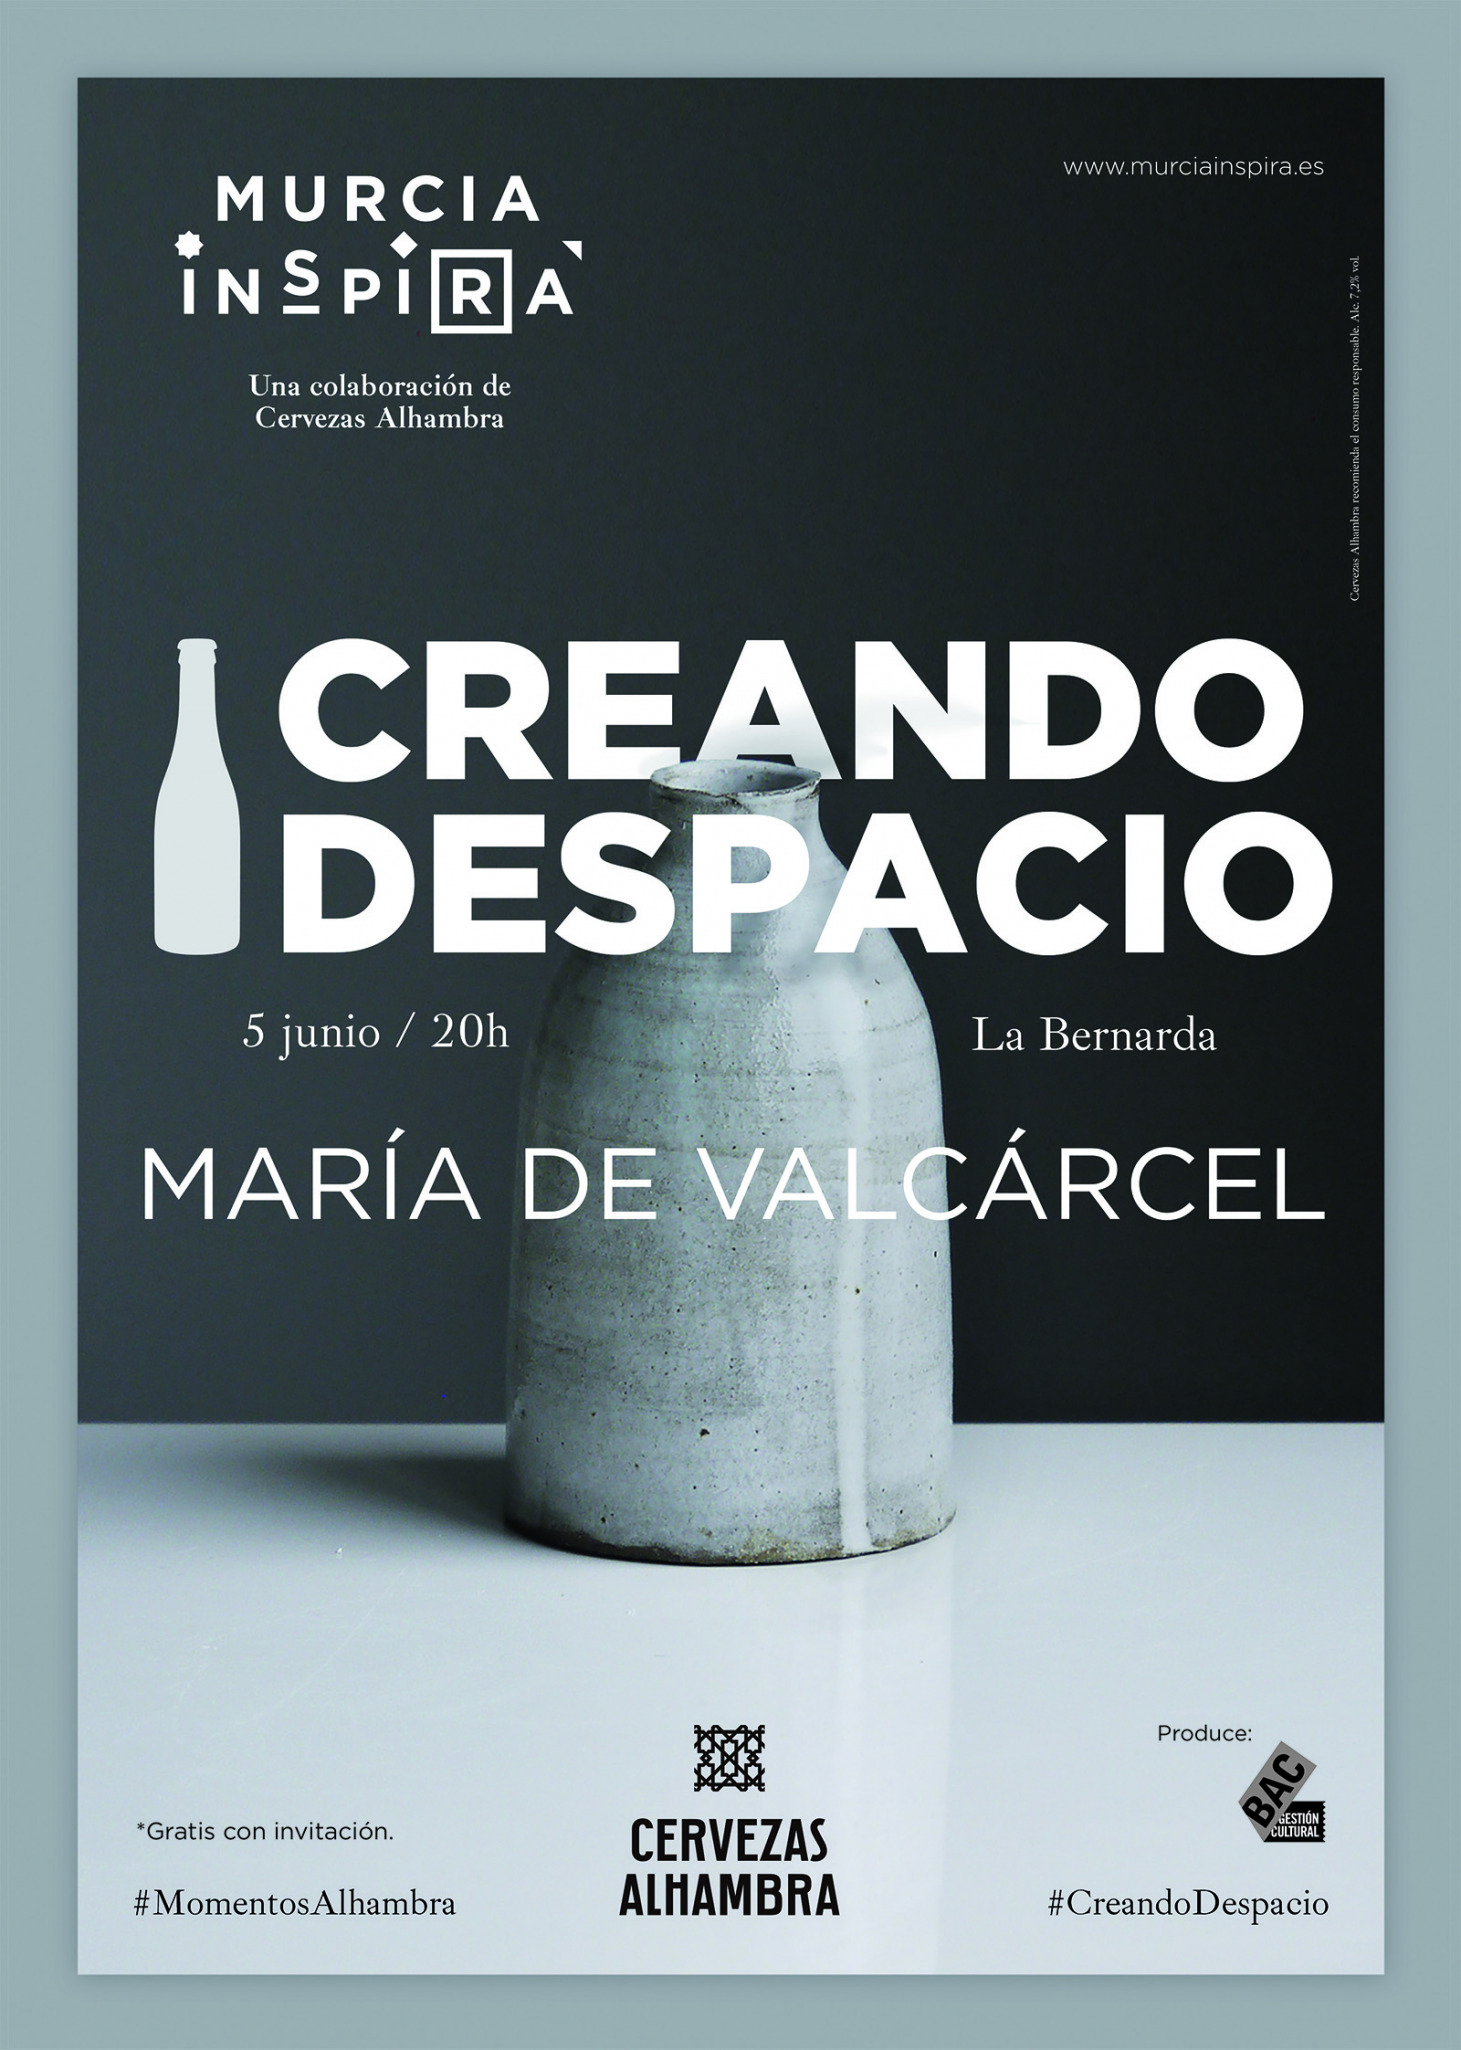 Artesanía y vanguardia en la cuarta edición de ‘Creando Despacio’ Murcia Inspira